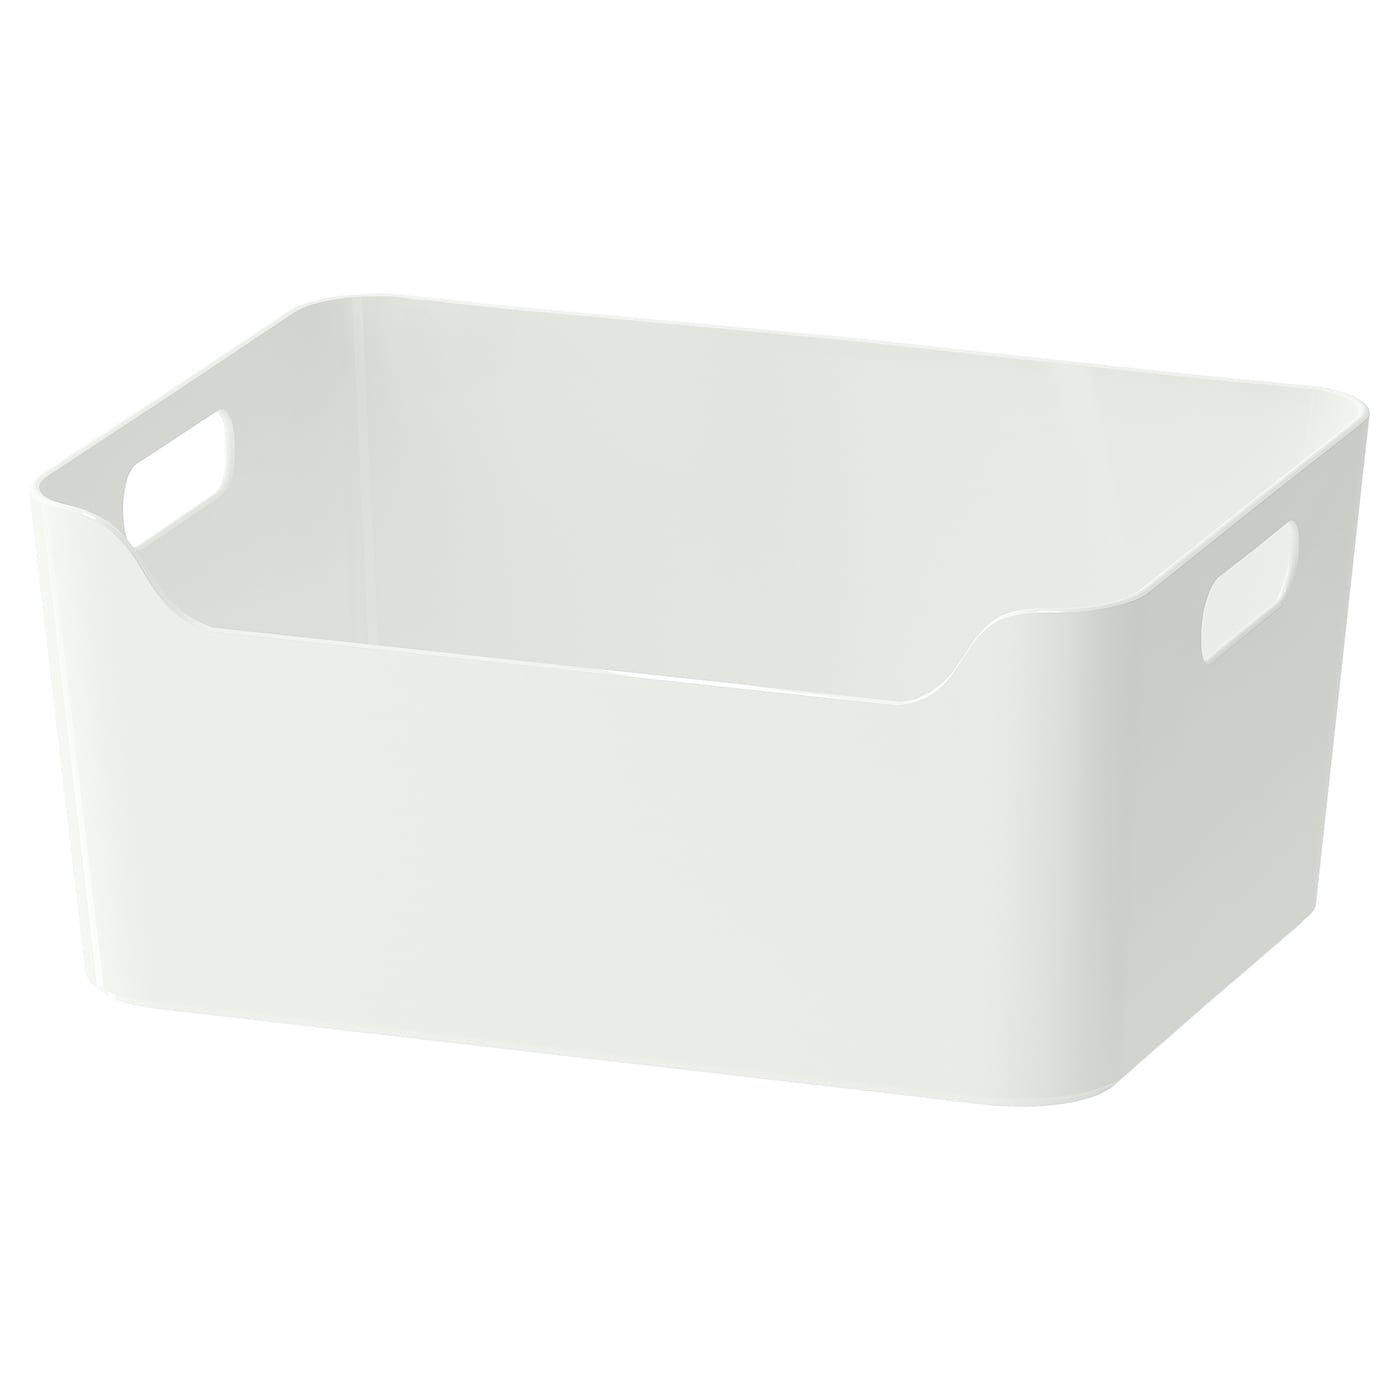 Коробка - VARIERA  IKEA/ ВАРЬЕРА ИКЕА, 34х24х14 см, белый